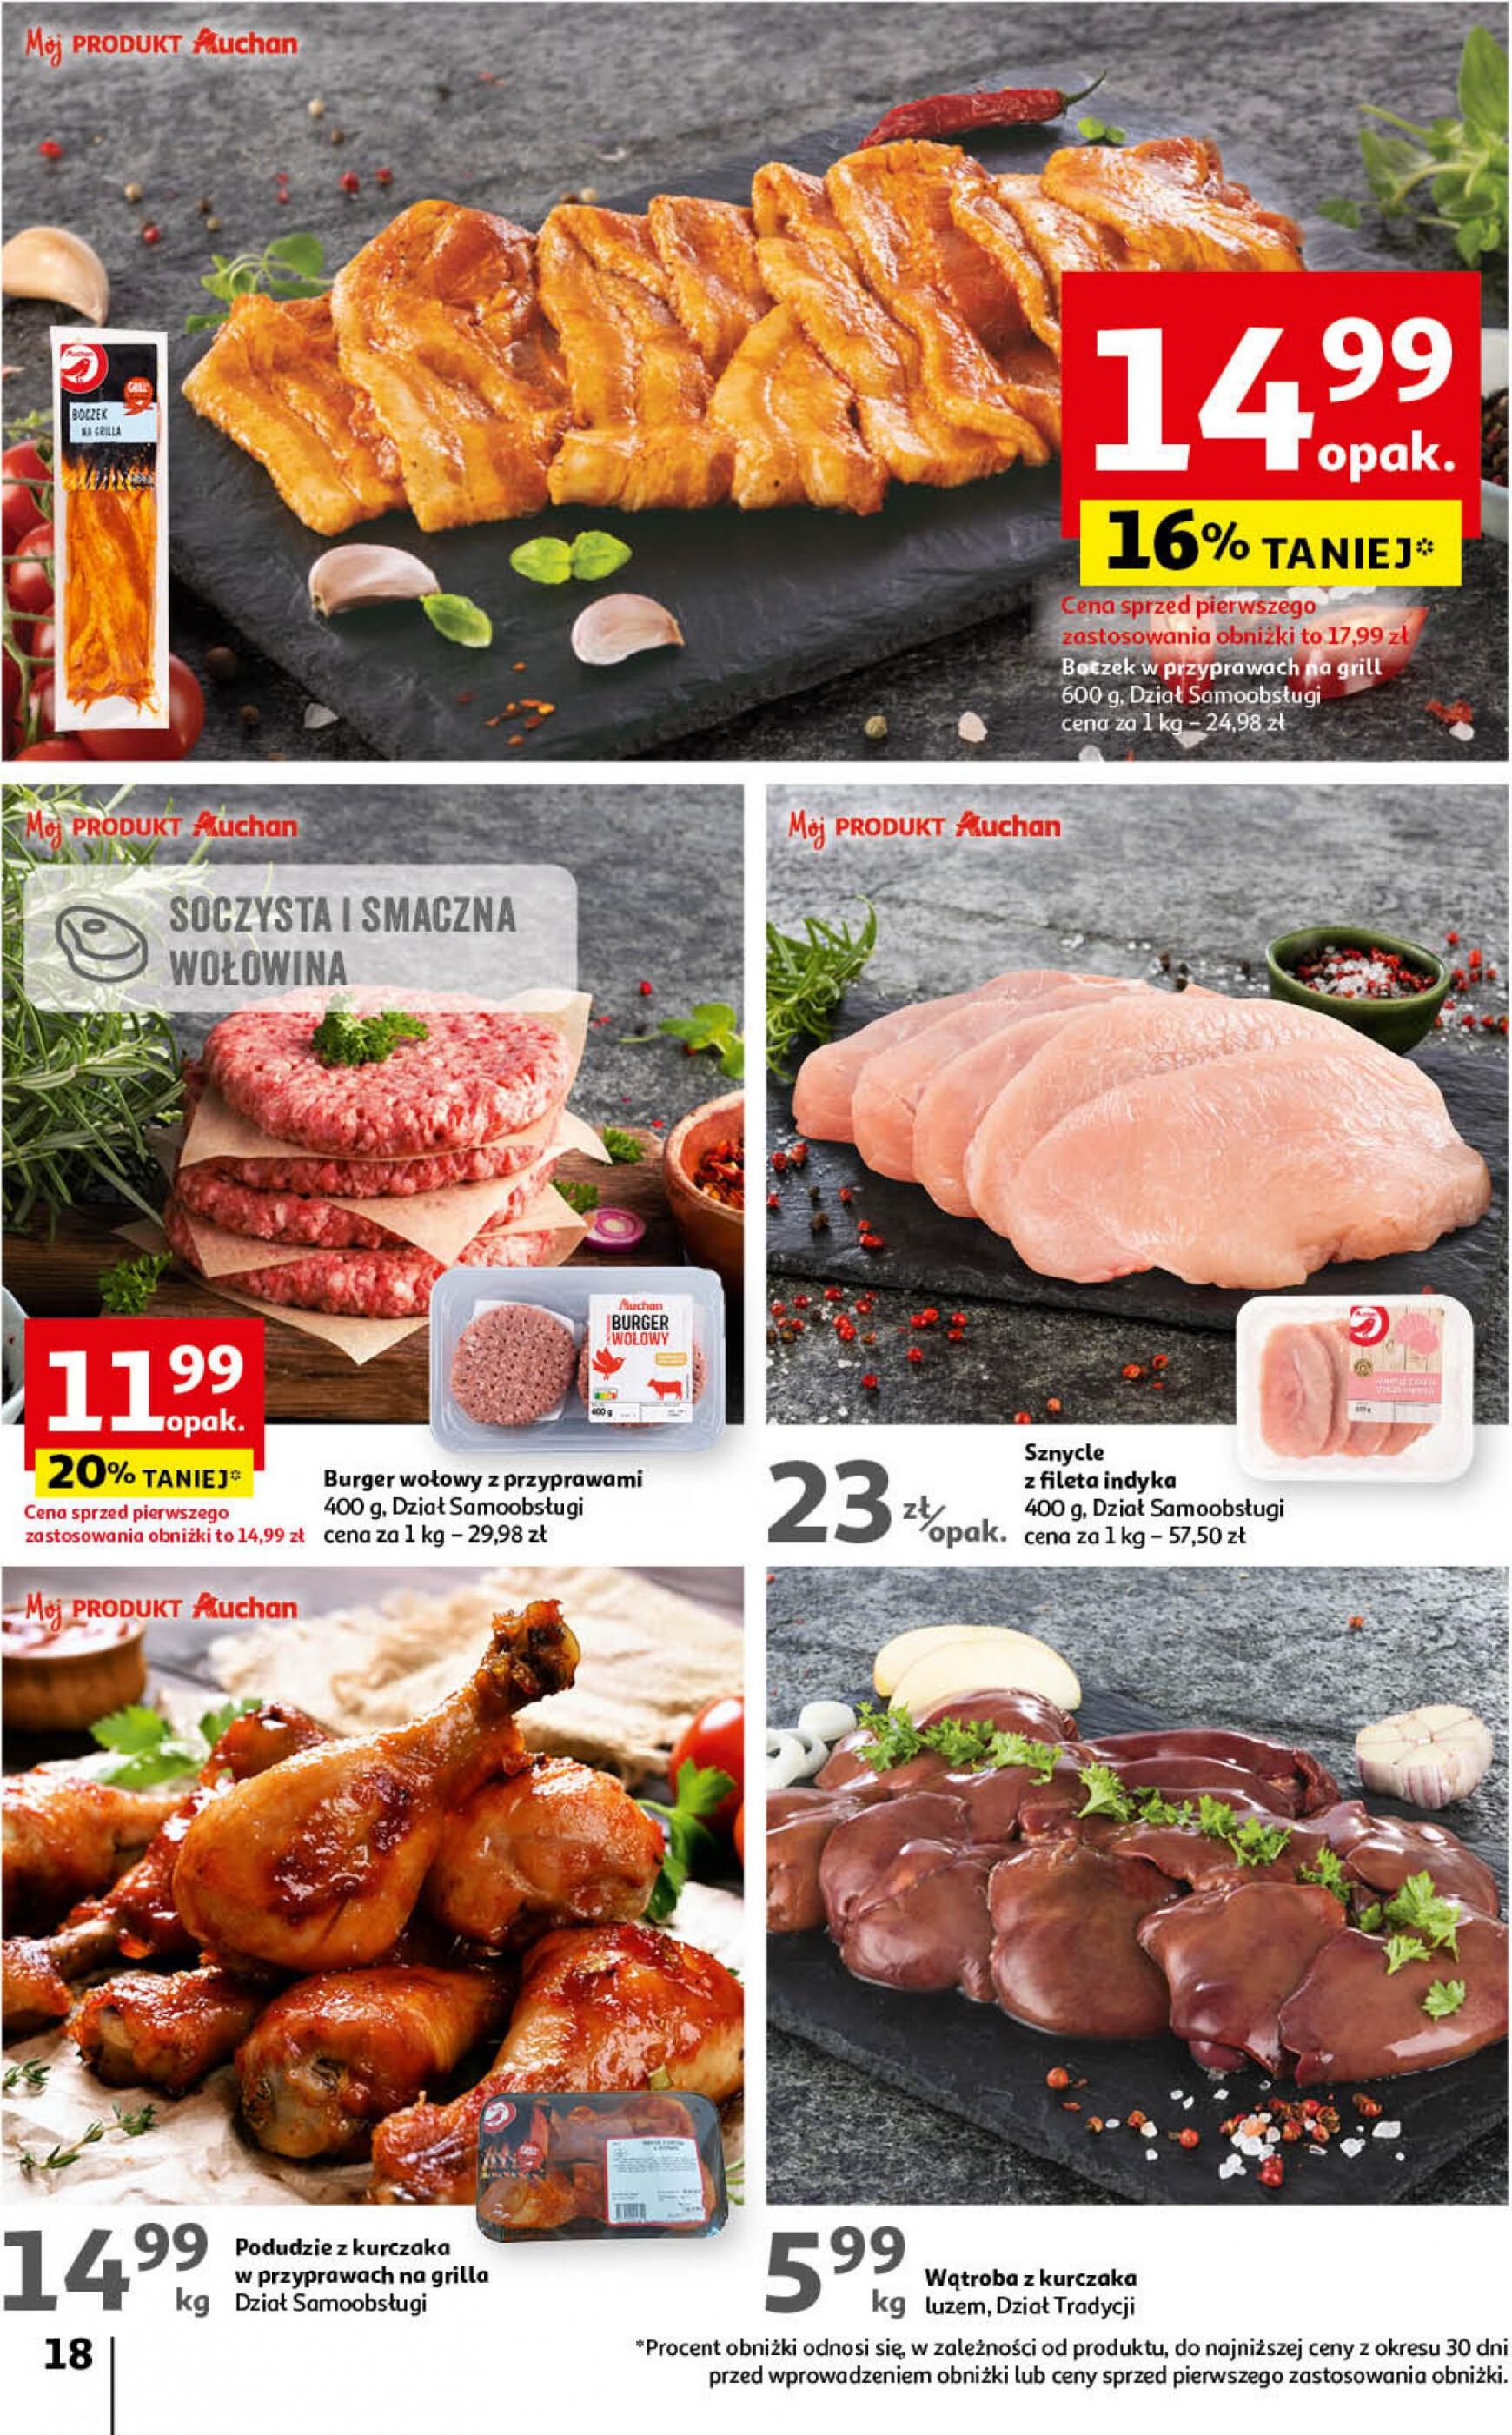 auchan - Hipermarket Auchan - Gazetka Mamy wiosnę Ale jazda! gazetka aktualna ważna od 18.04. - 24.04. - page: 18